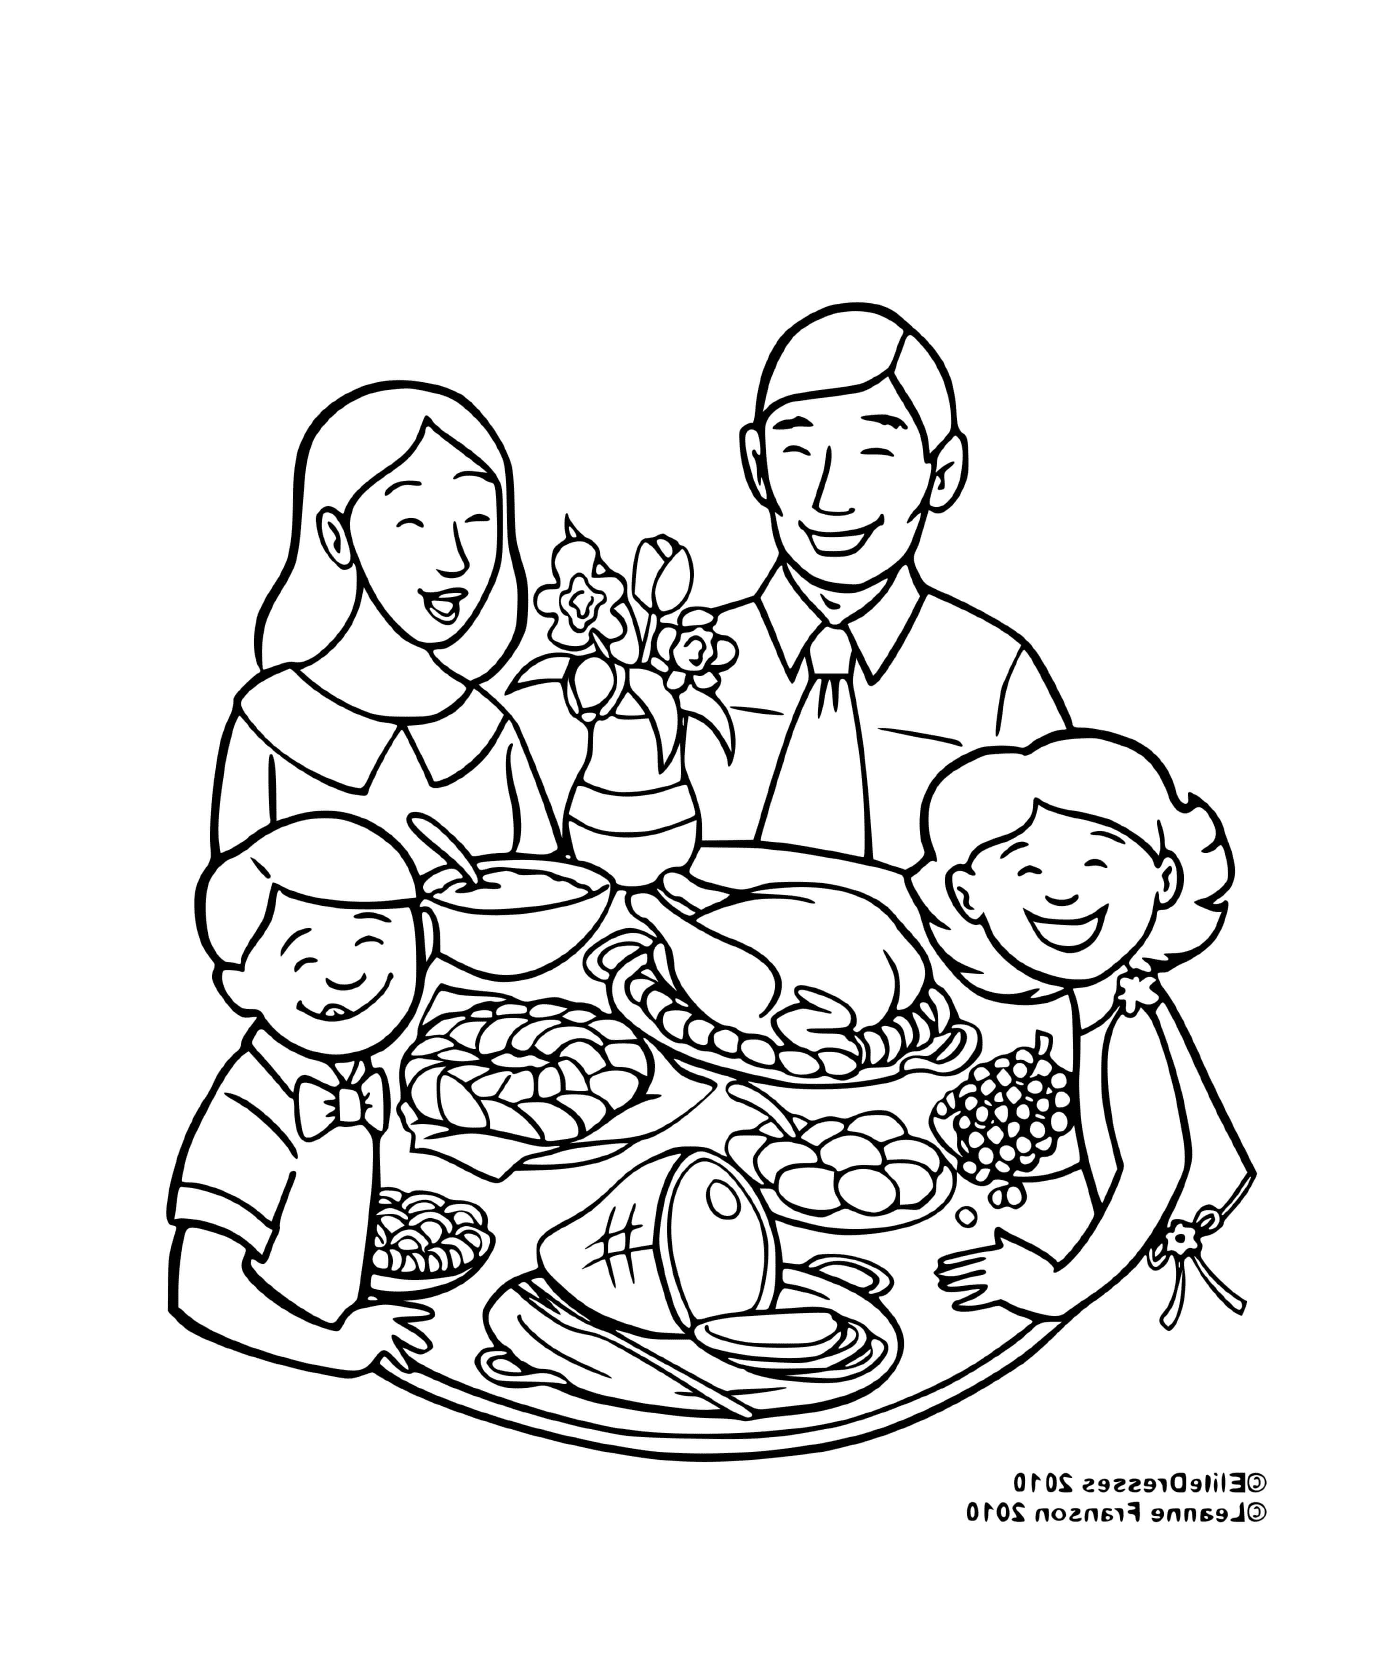  Семья, свободная для еды 